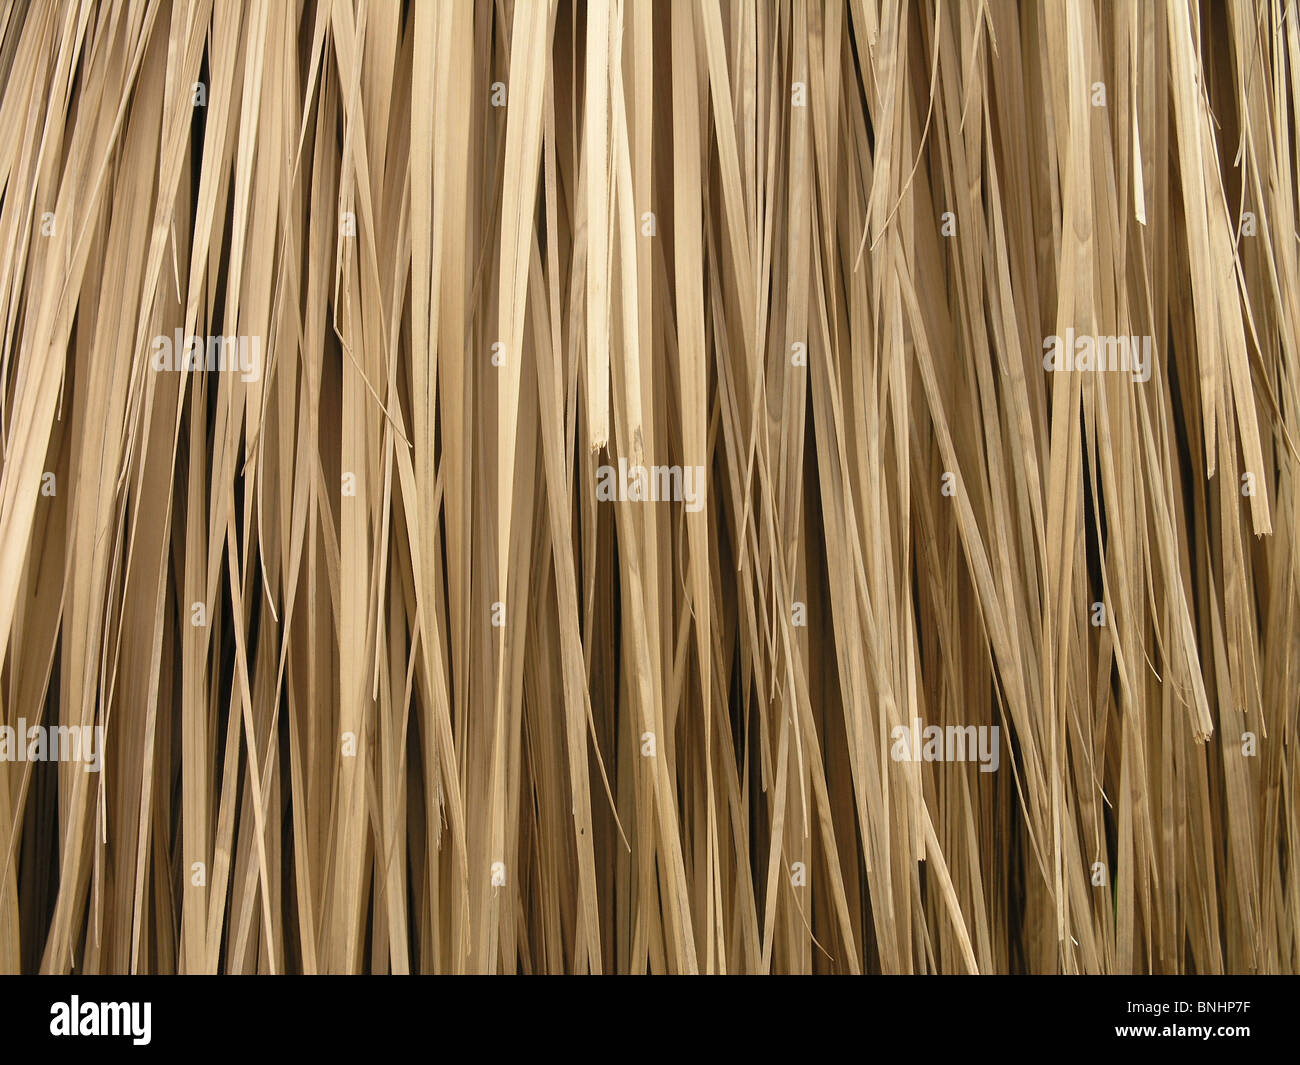 Bast fibres fibers plant plants detail close-up nature palm palms Stock Photo